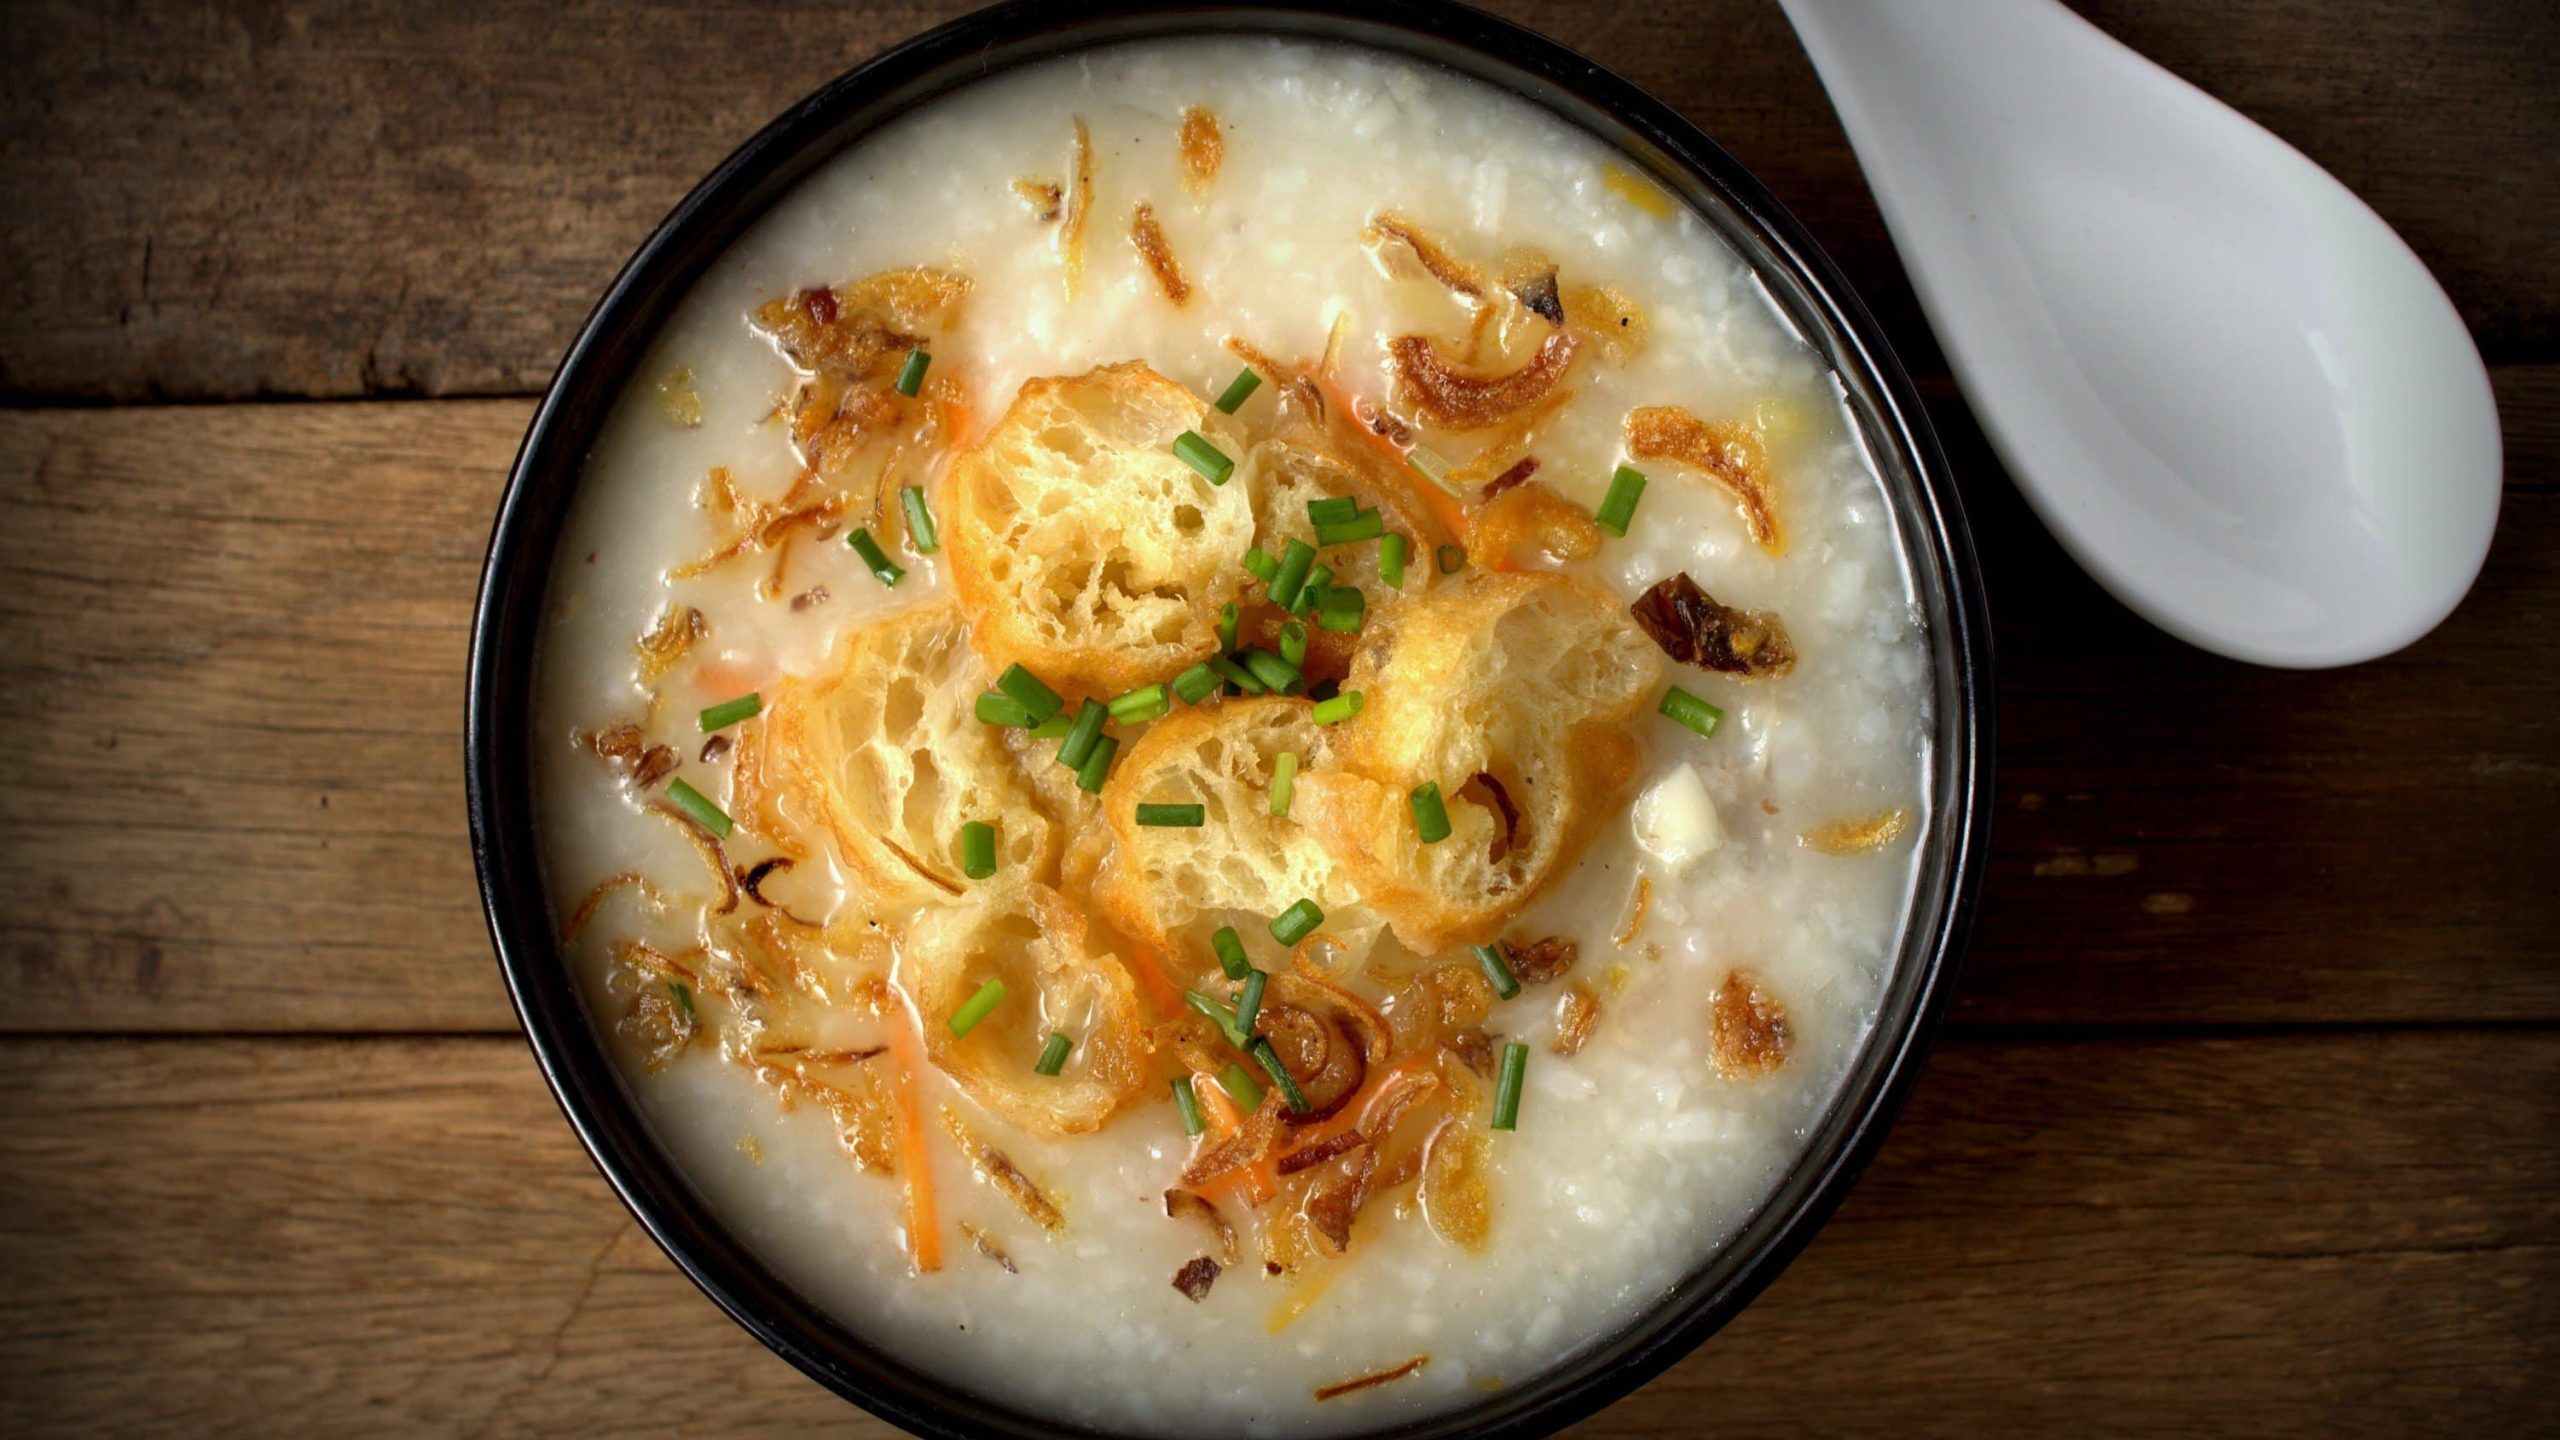 Asiatische Reissuppe, auch Congee genannt, mit Reis, Gewürzen, garniert mit frittierten Teigstangen, Schnittlauch und Röstzwiebeln in einer schwarzen Schale auf hölzernem Untergrund